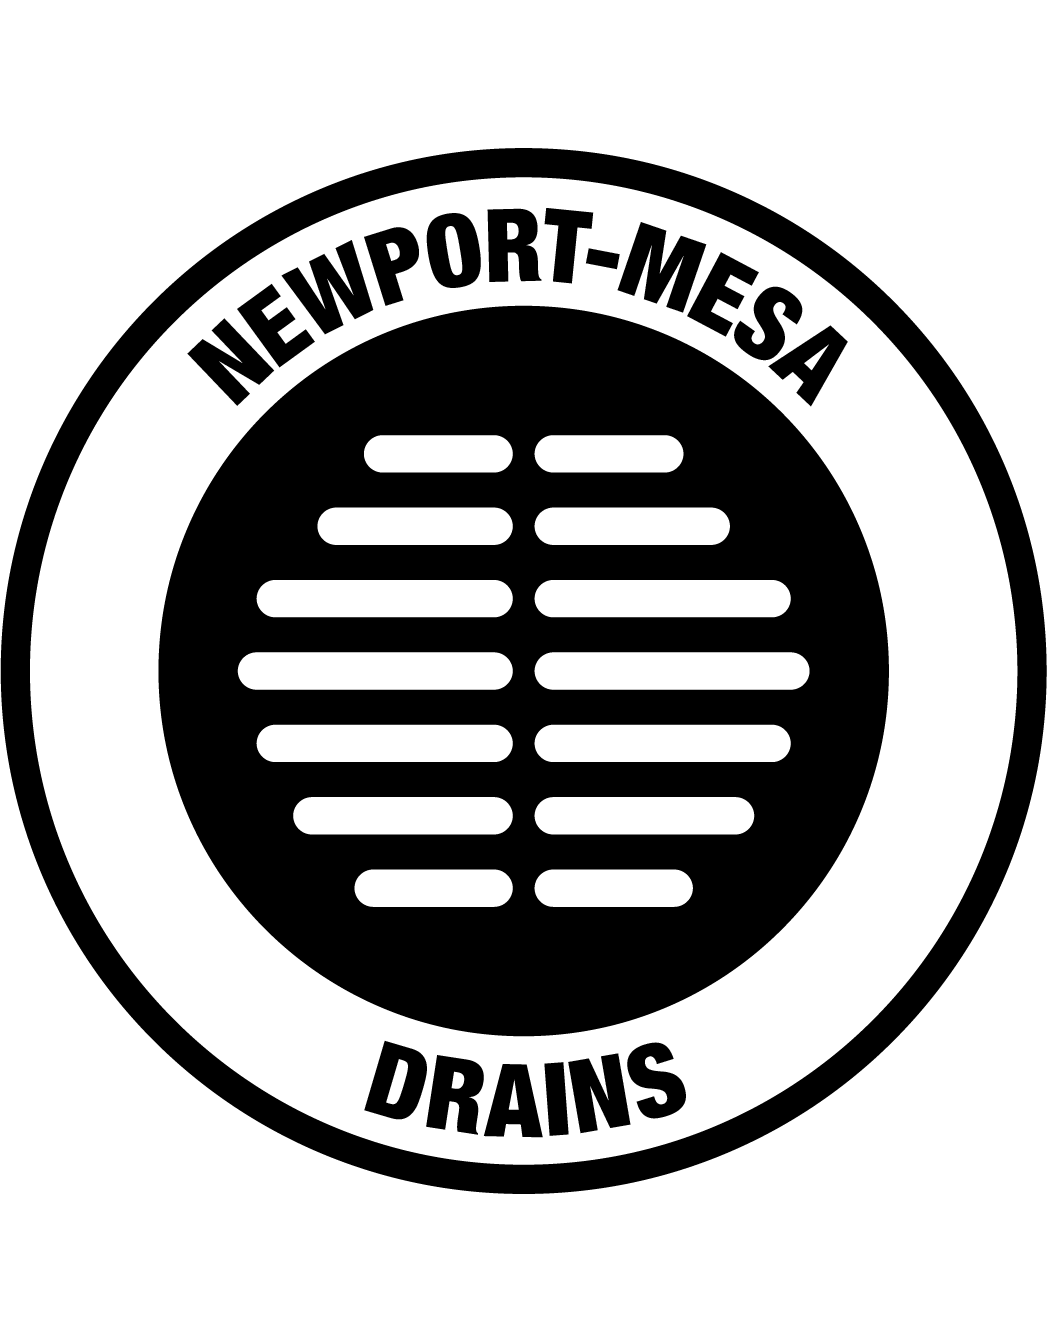 Newport-Mesa Drains Logo